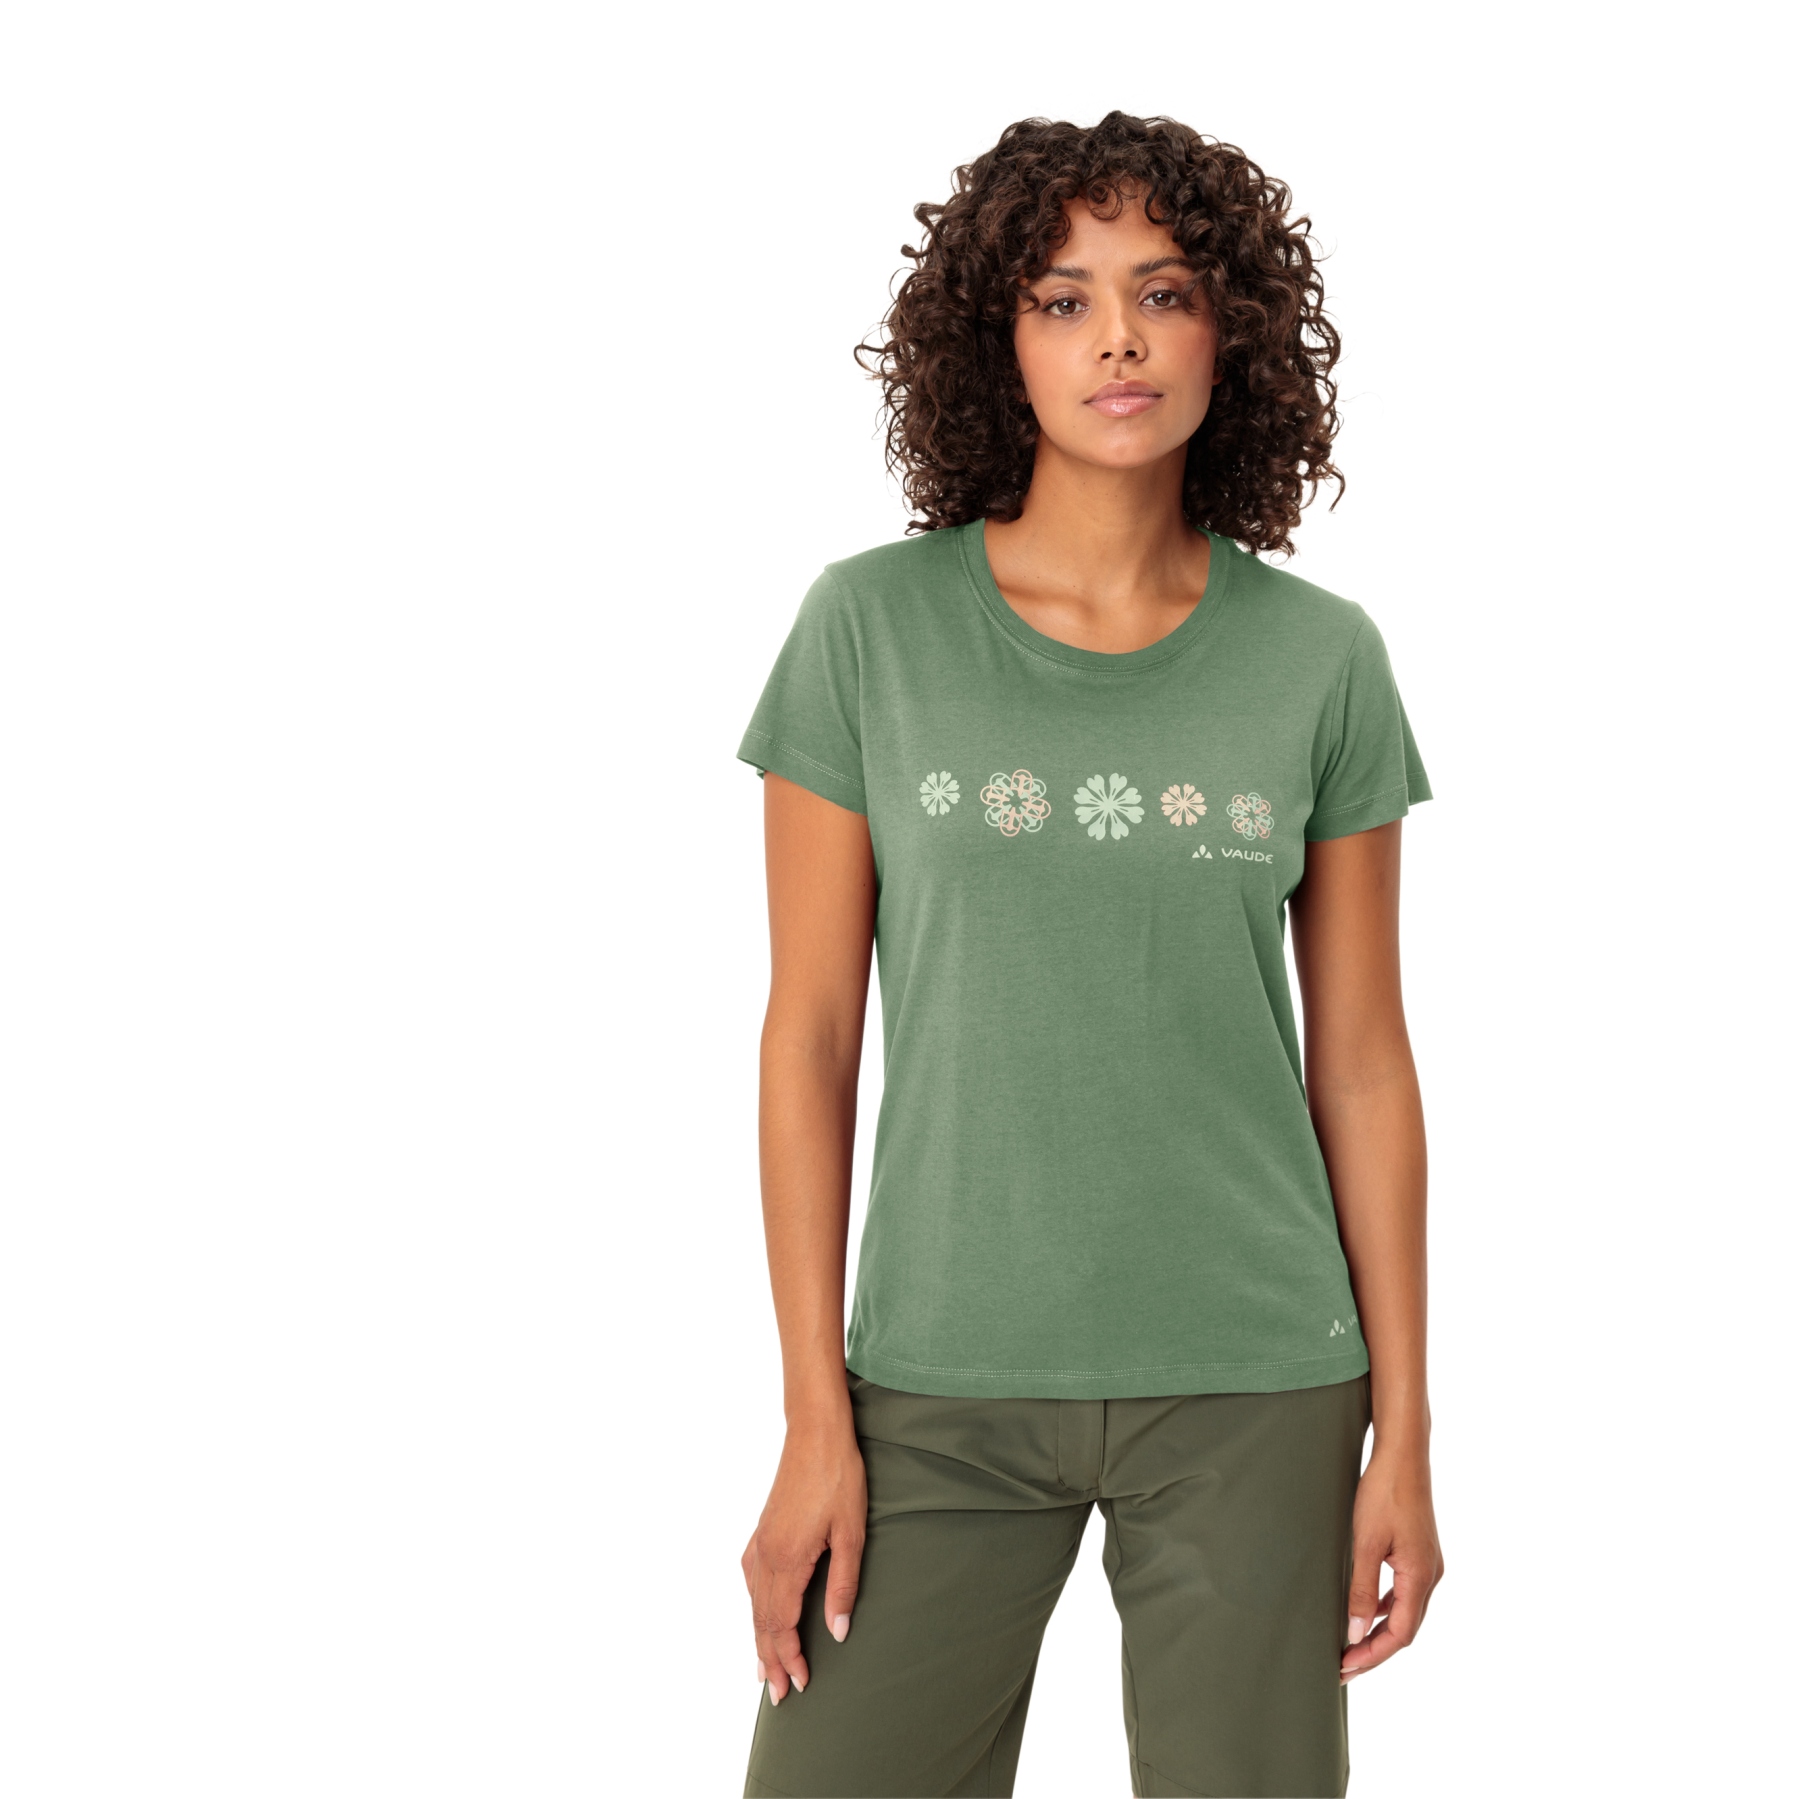 Produktbild von Vaude Cyclist V T-Shirt Damen - willow green uni